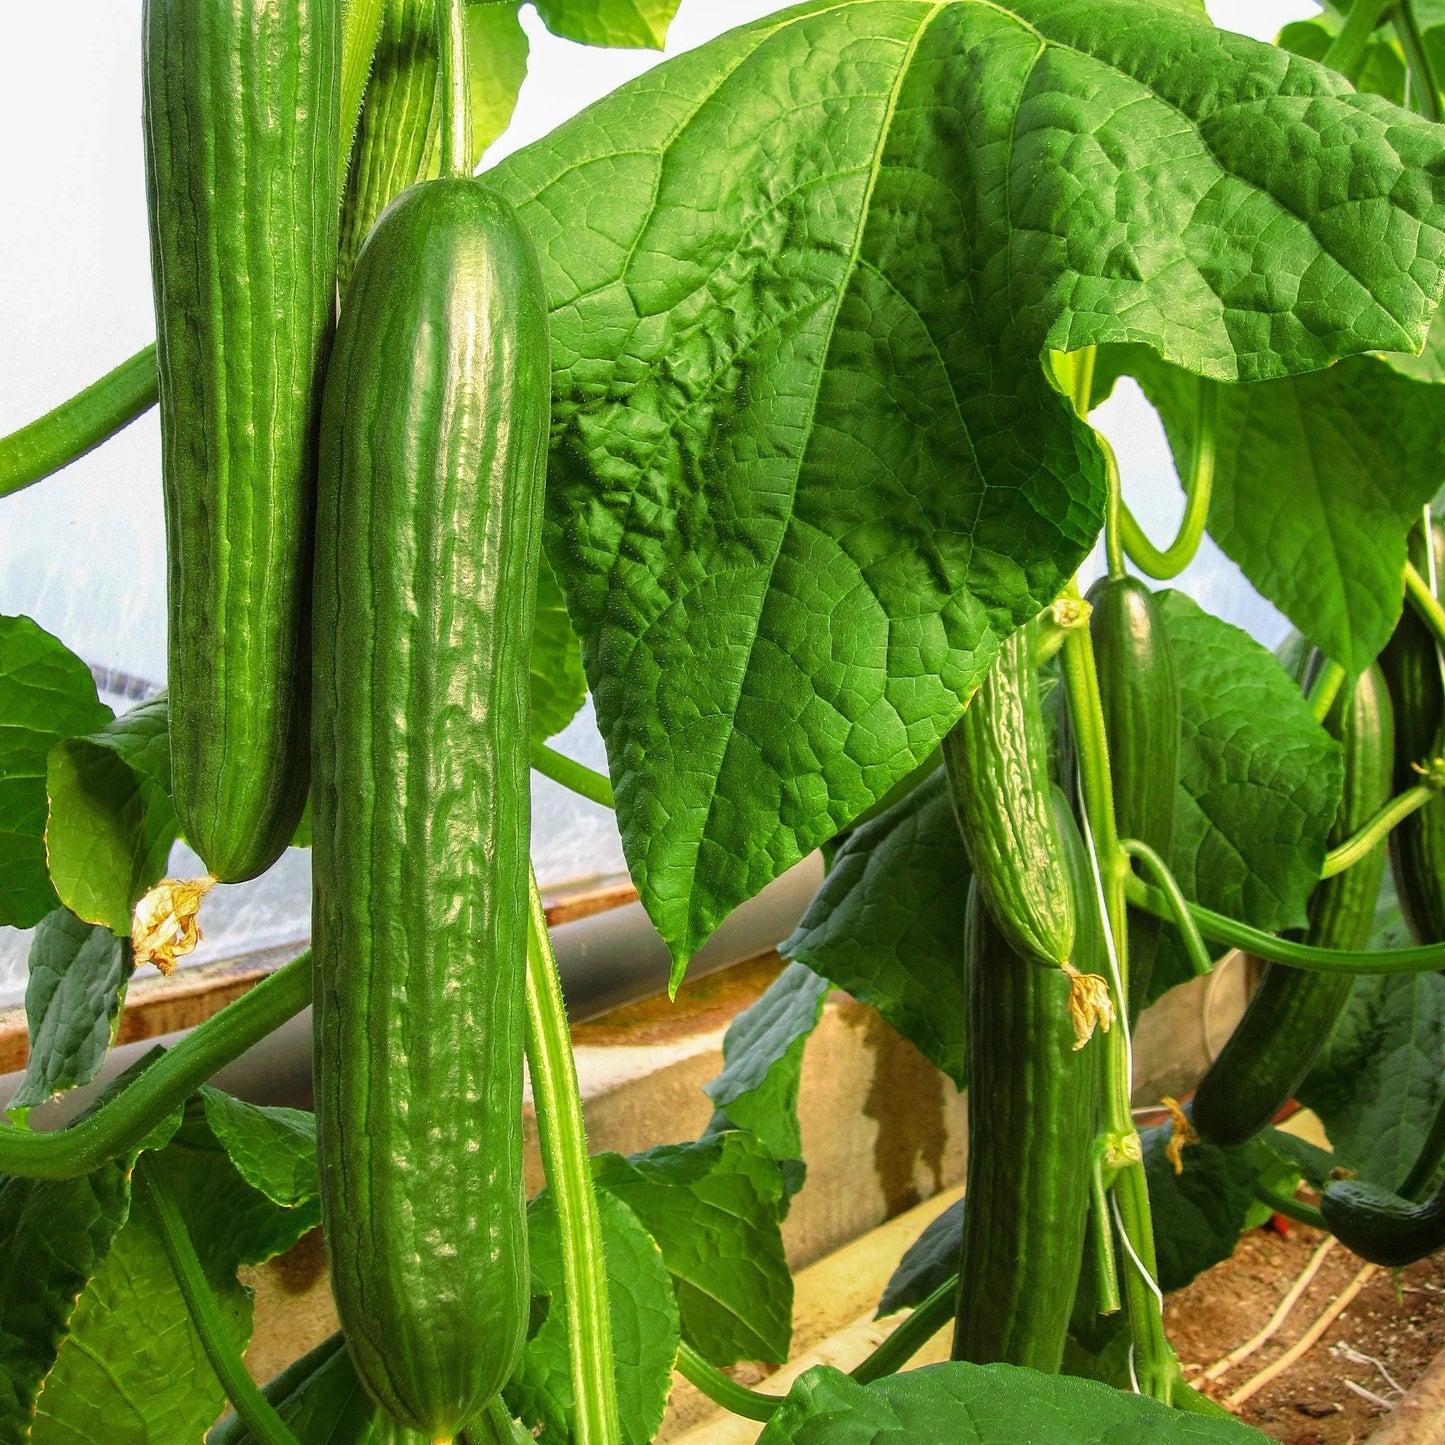 Telegraph Improved Cucumber